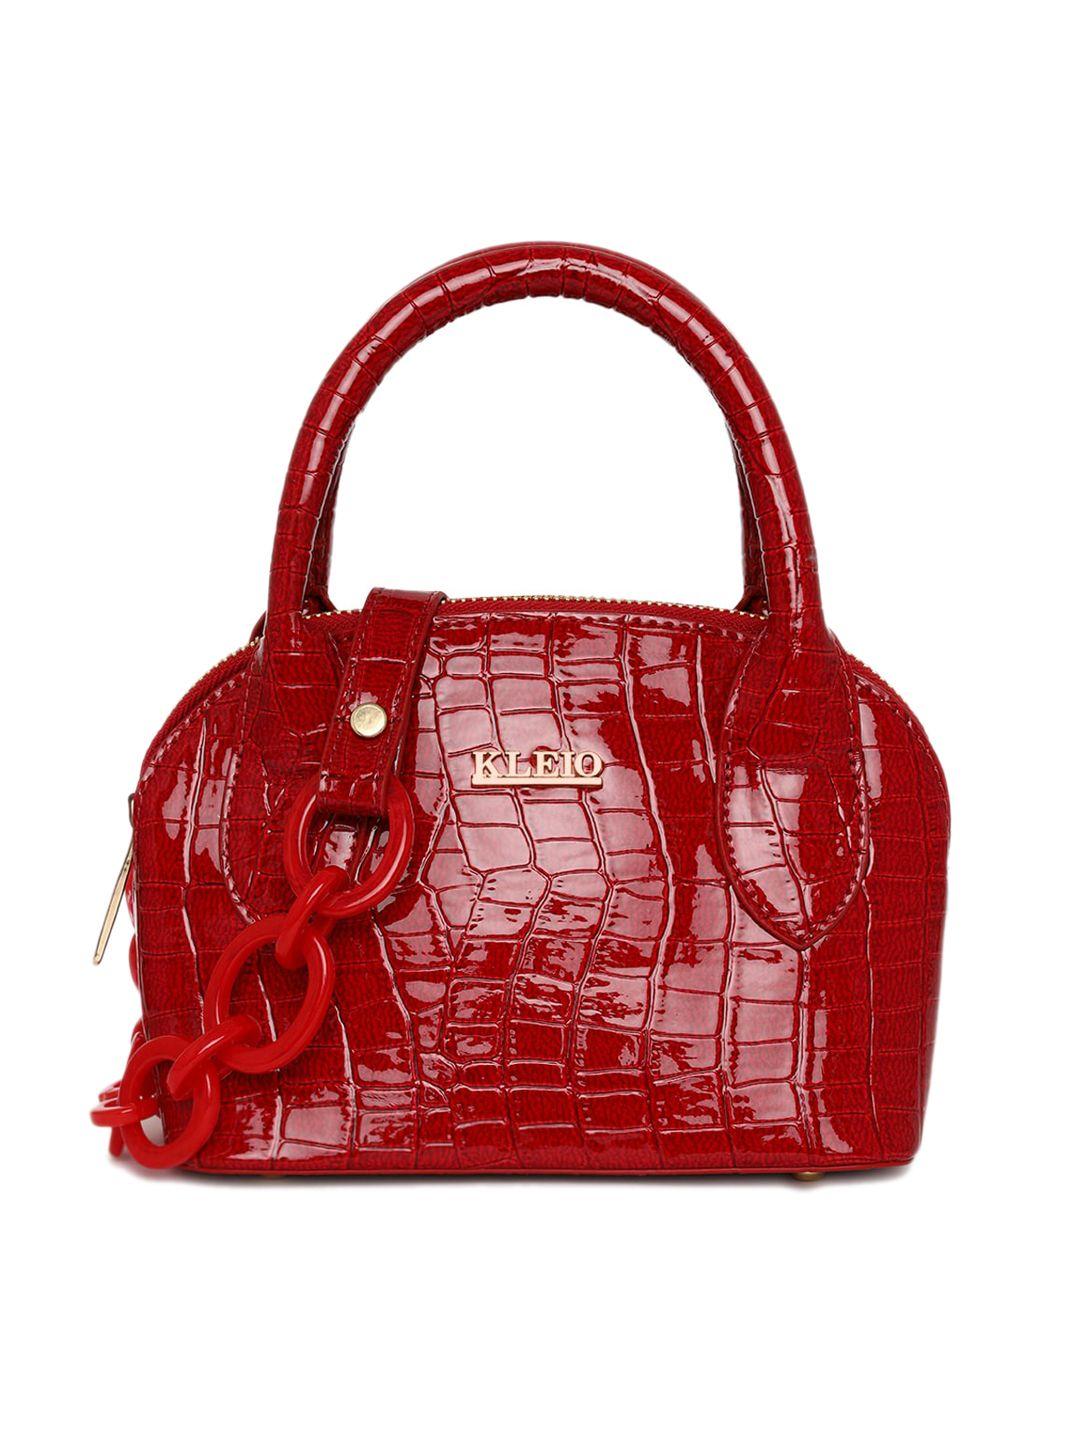 kleio women red croc textured structured handheld bag